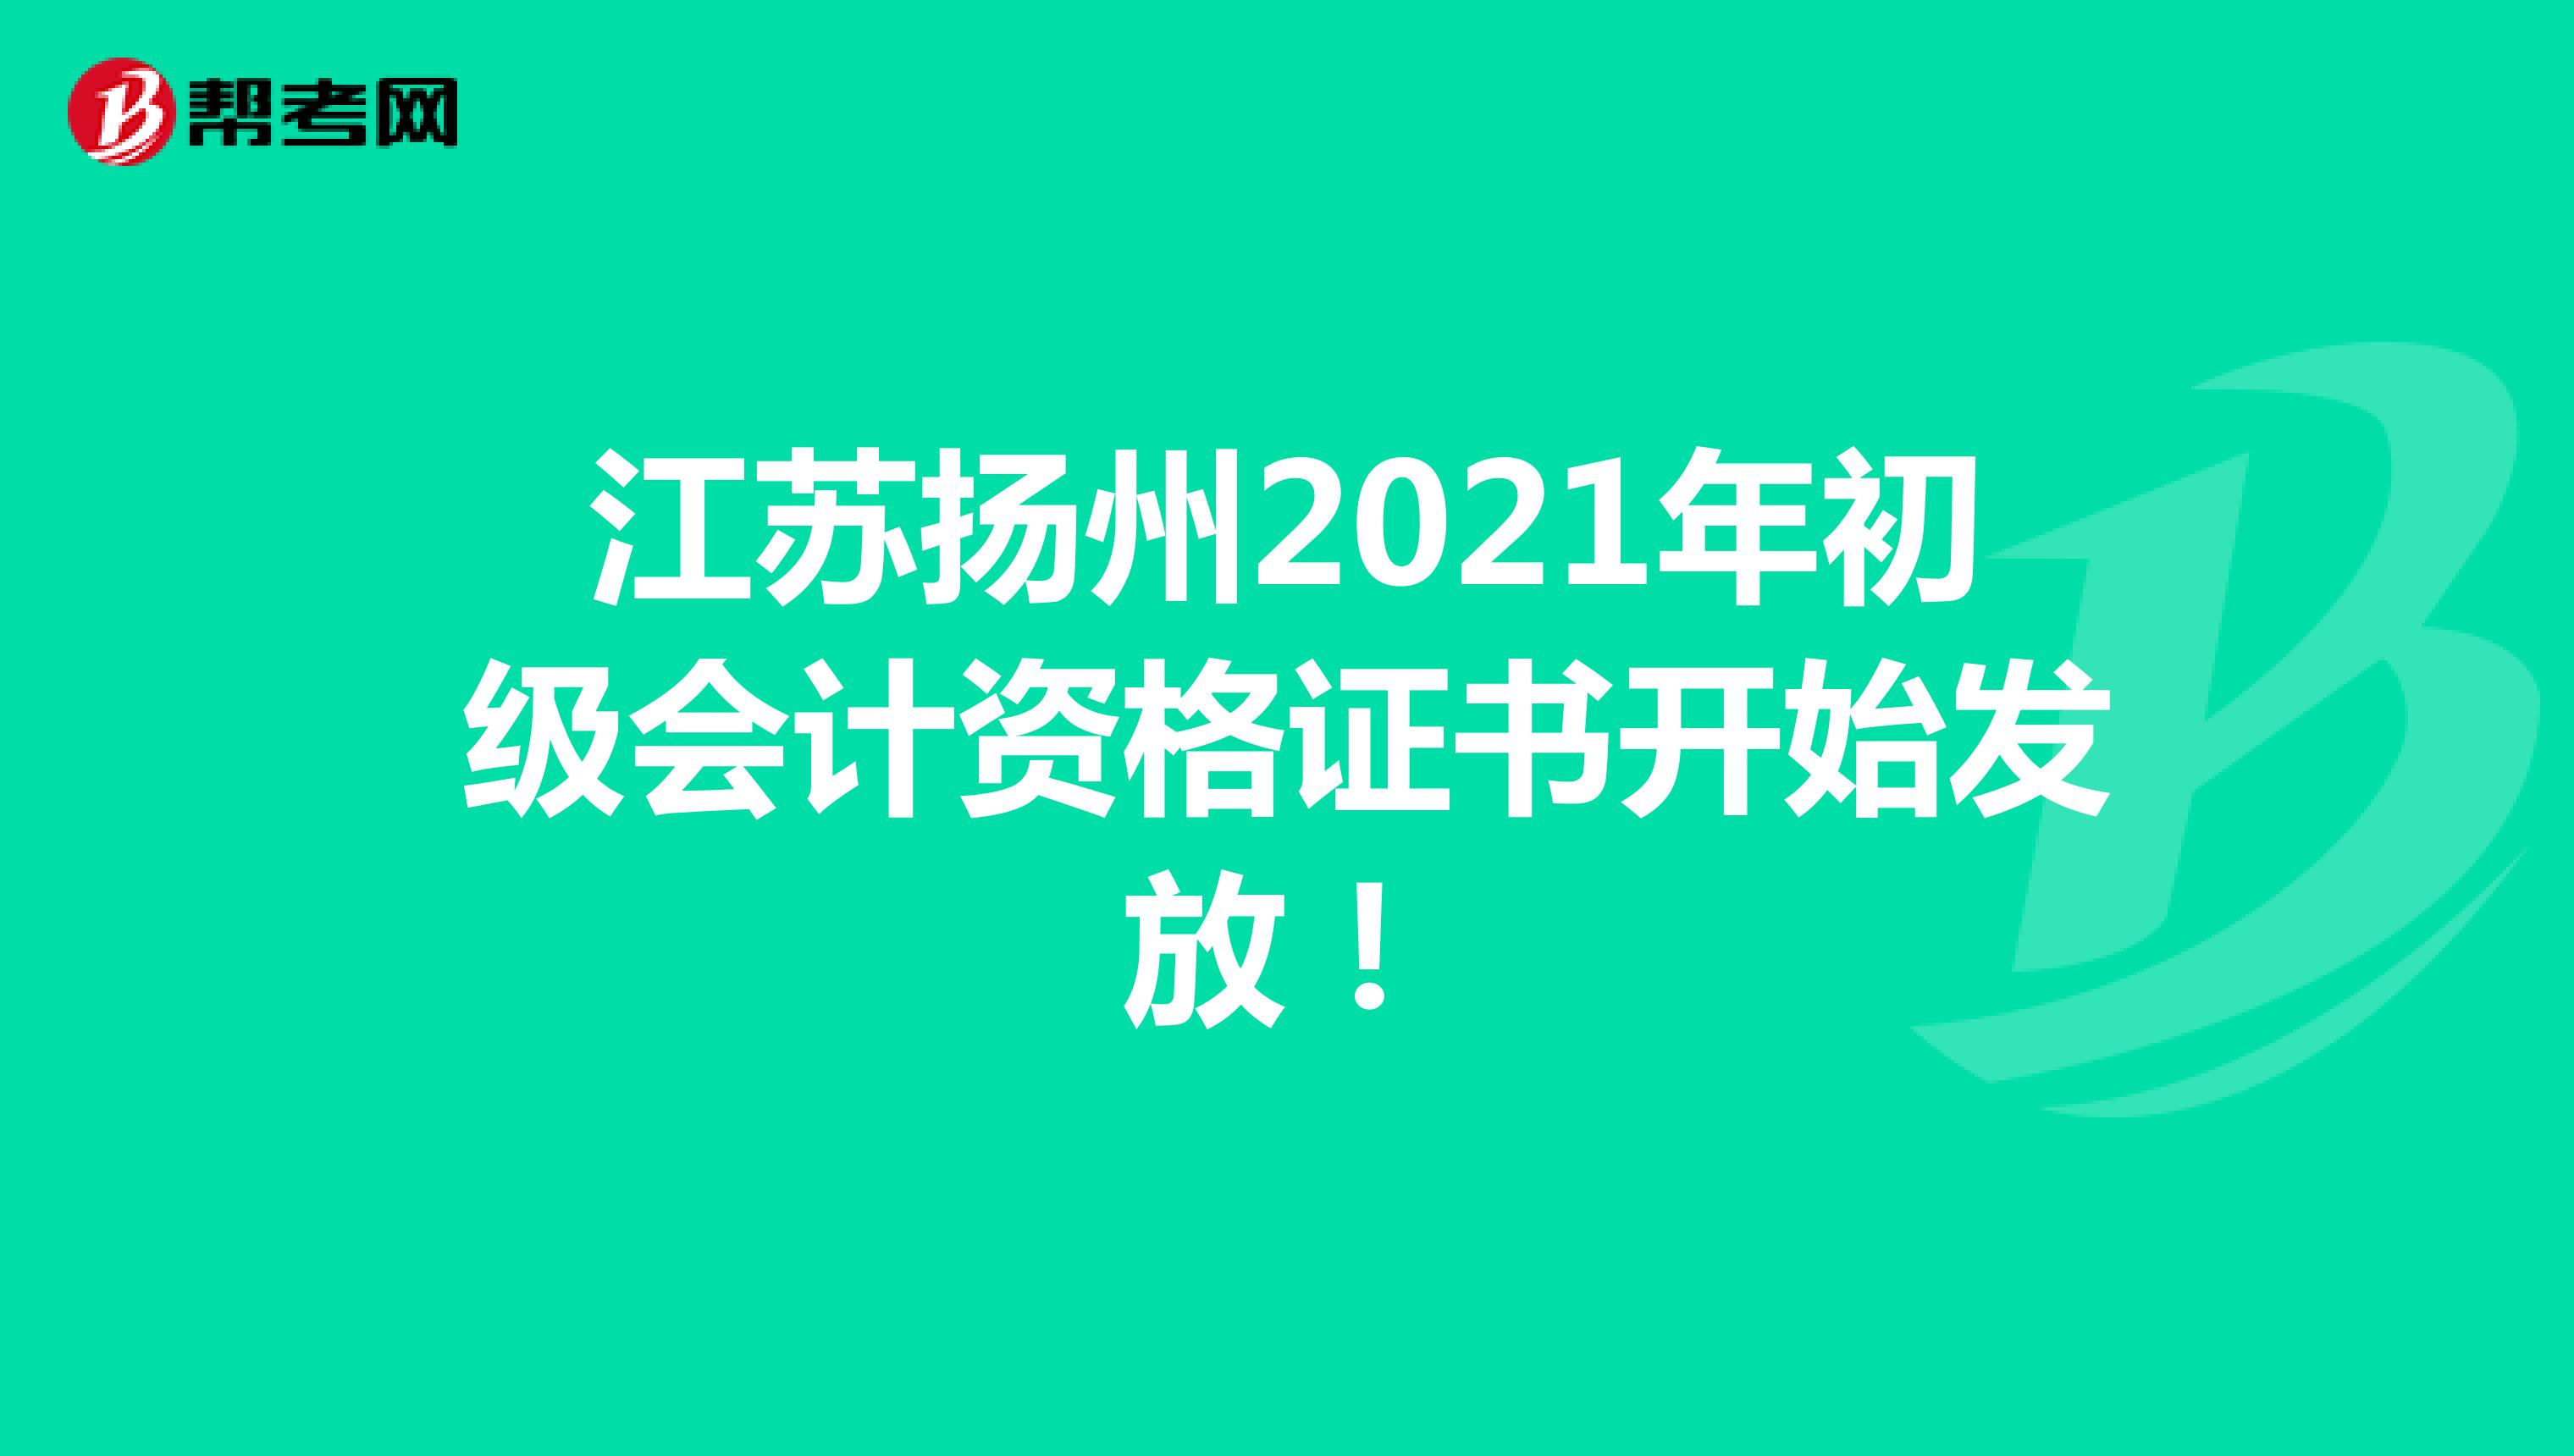 江苏扬州2021年初级会计资格证书开始发放！